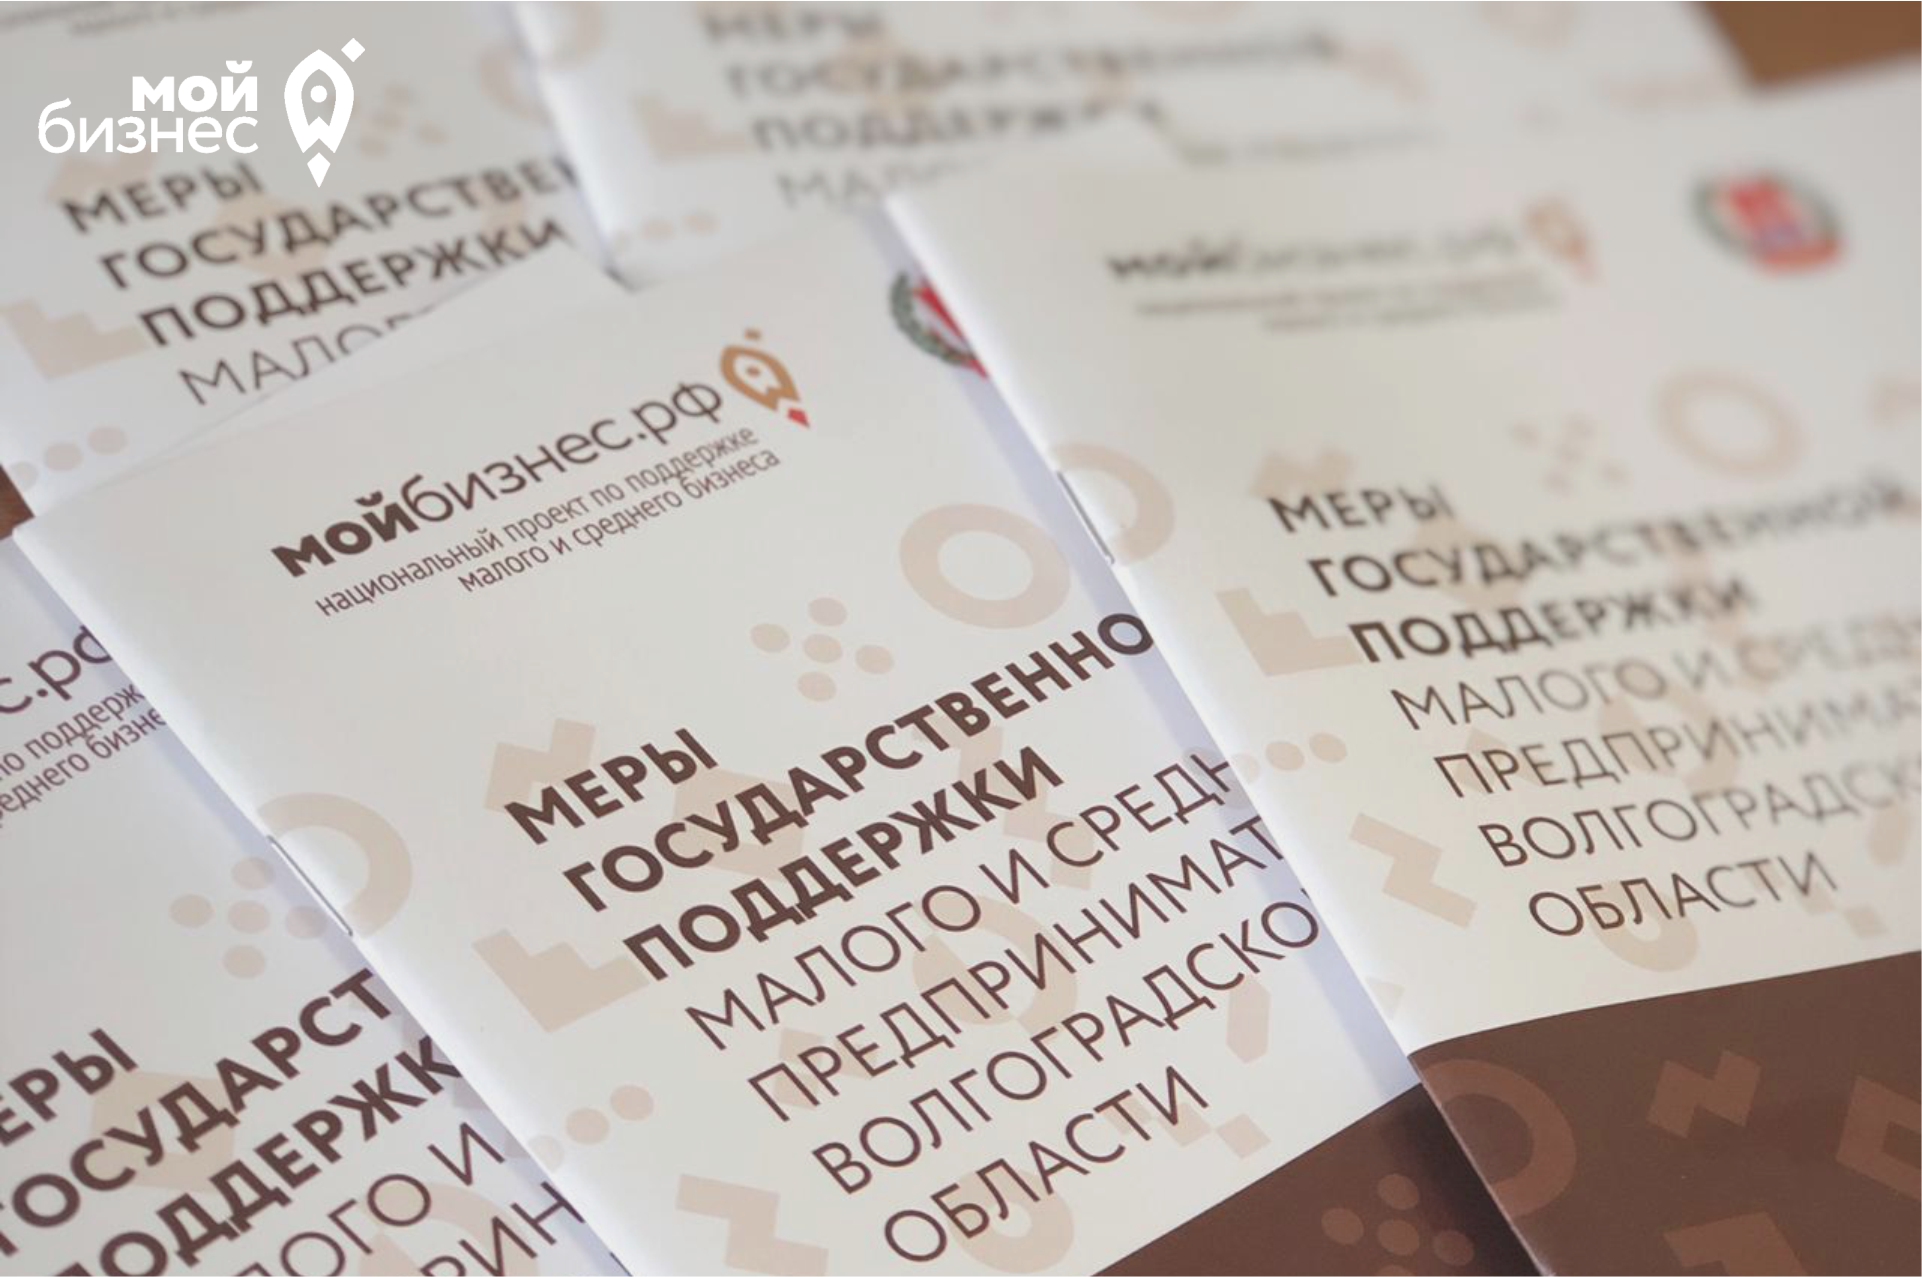 Фонд микрофинансирования предпринимательства Волгоградской области объявляет о старте новой программы